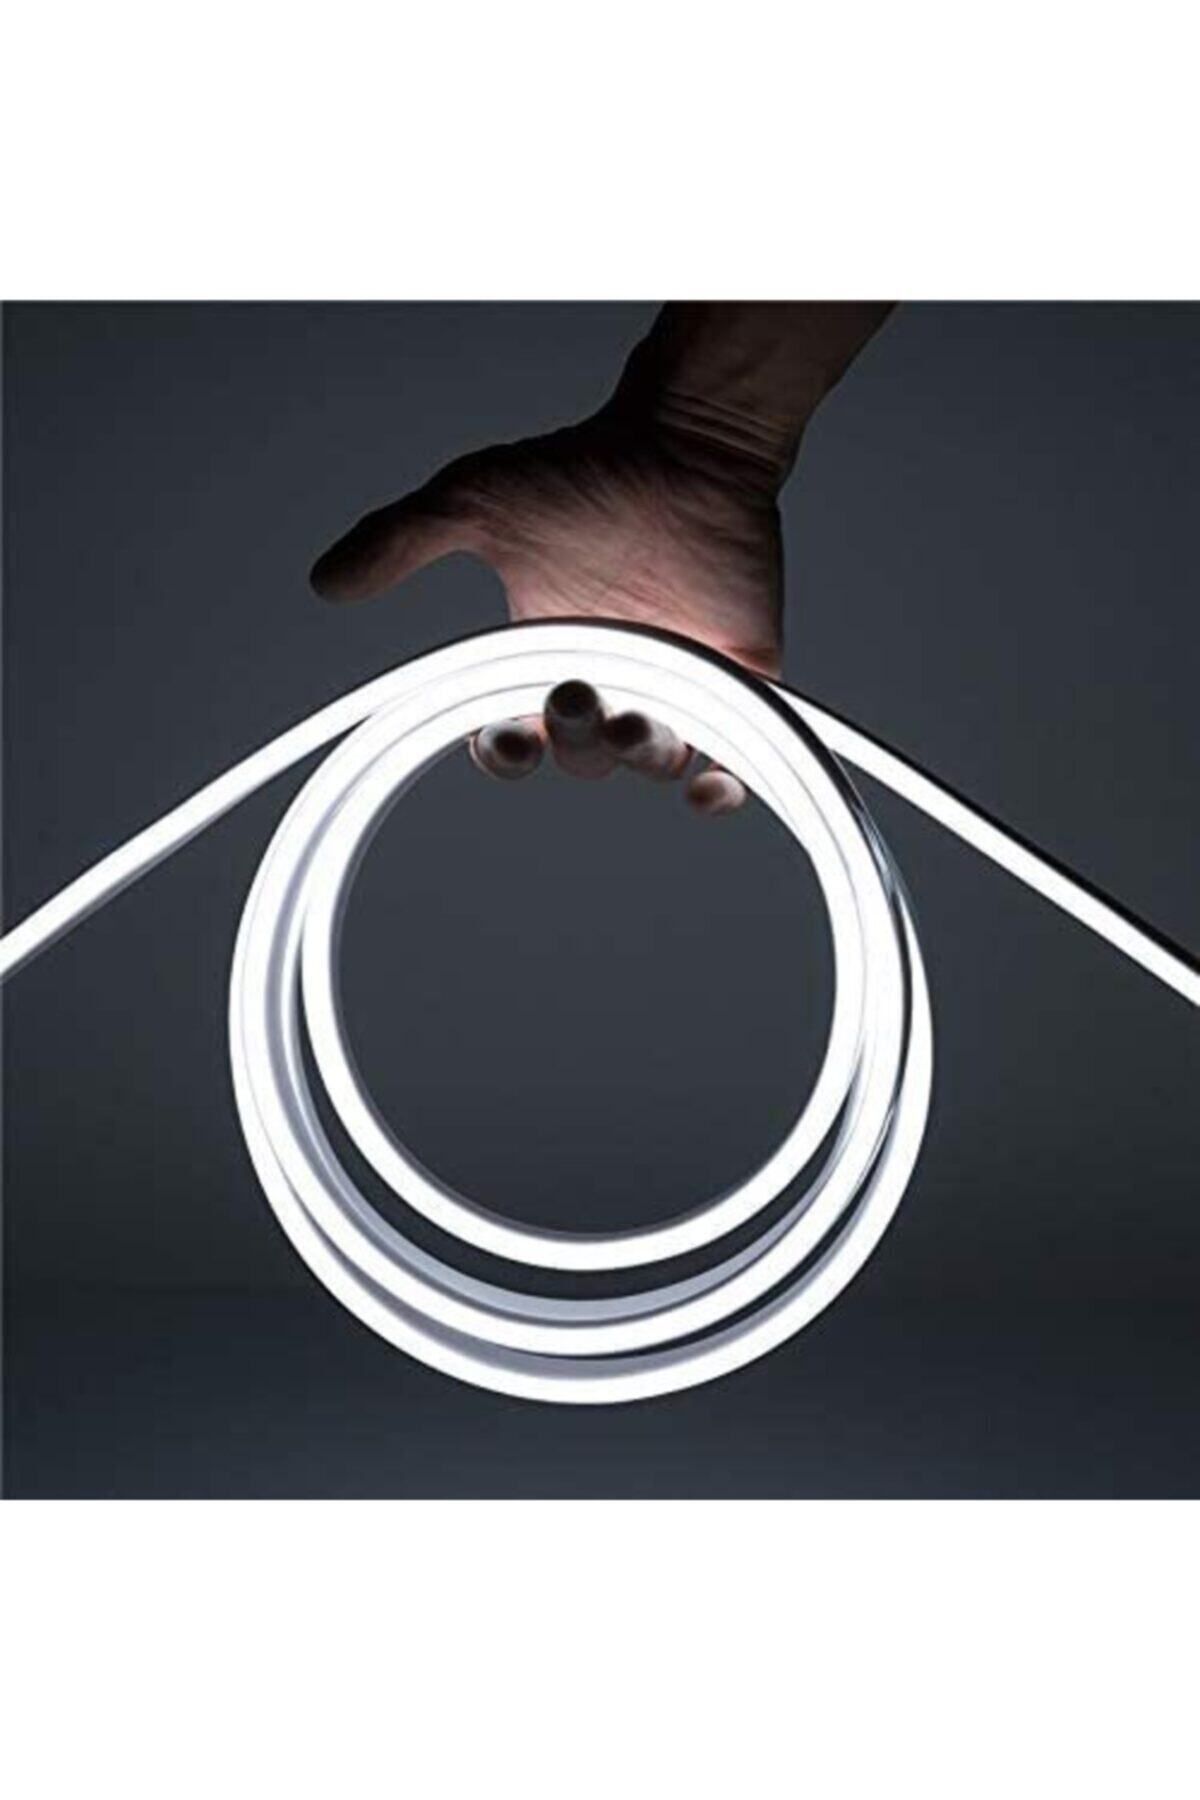 Ema Dükkan 12 Volt 3 Metre Beyaz Neon Led Işık Prize Takılmaya Hazır Değil Neon Şerit Led Esnek Silikonlu